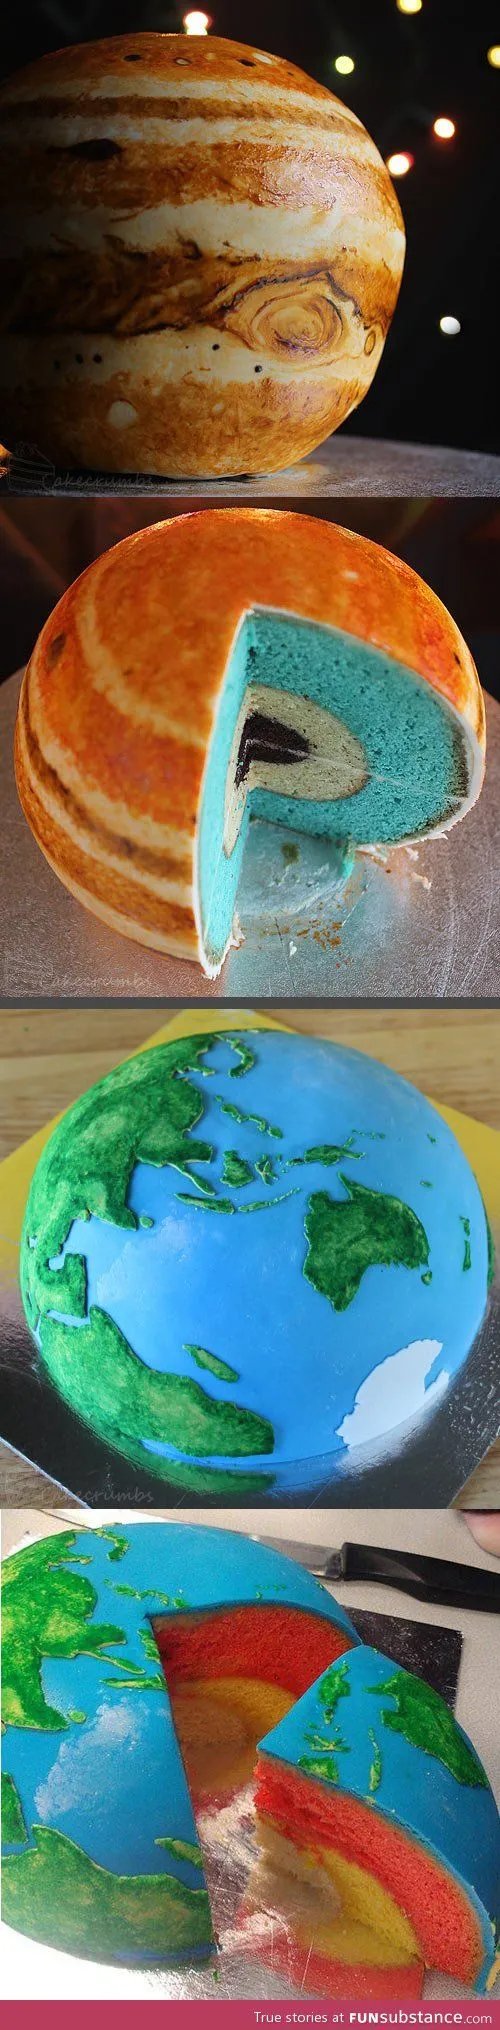 کیک مدل سیاره